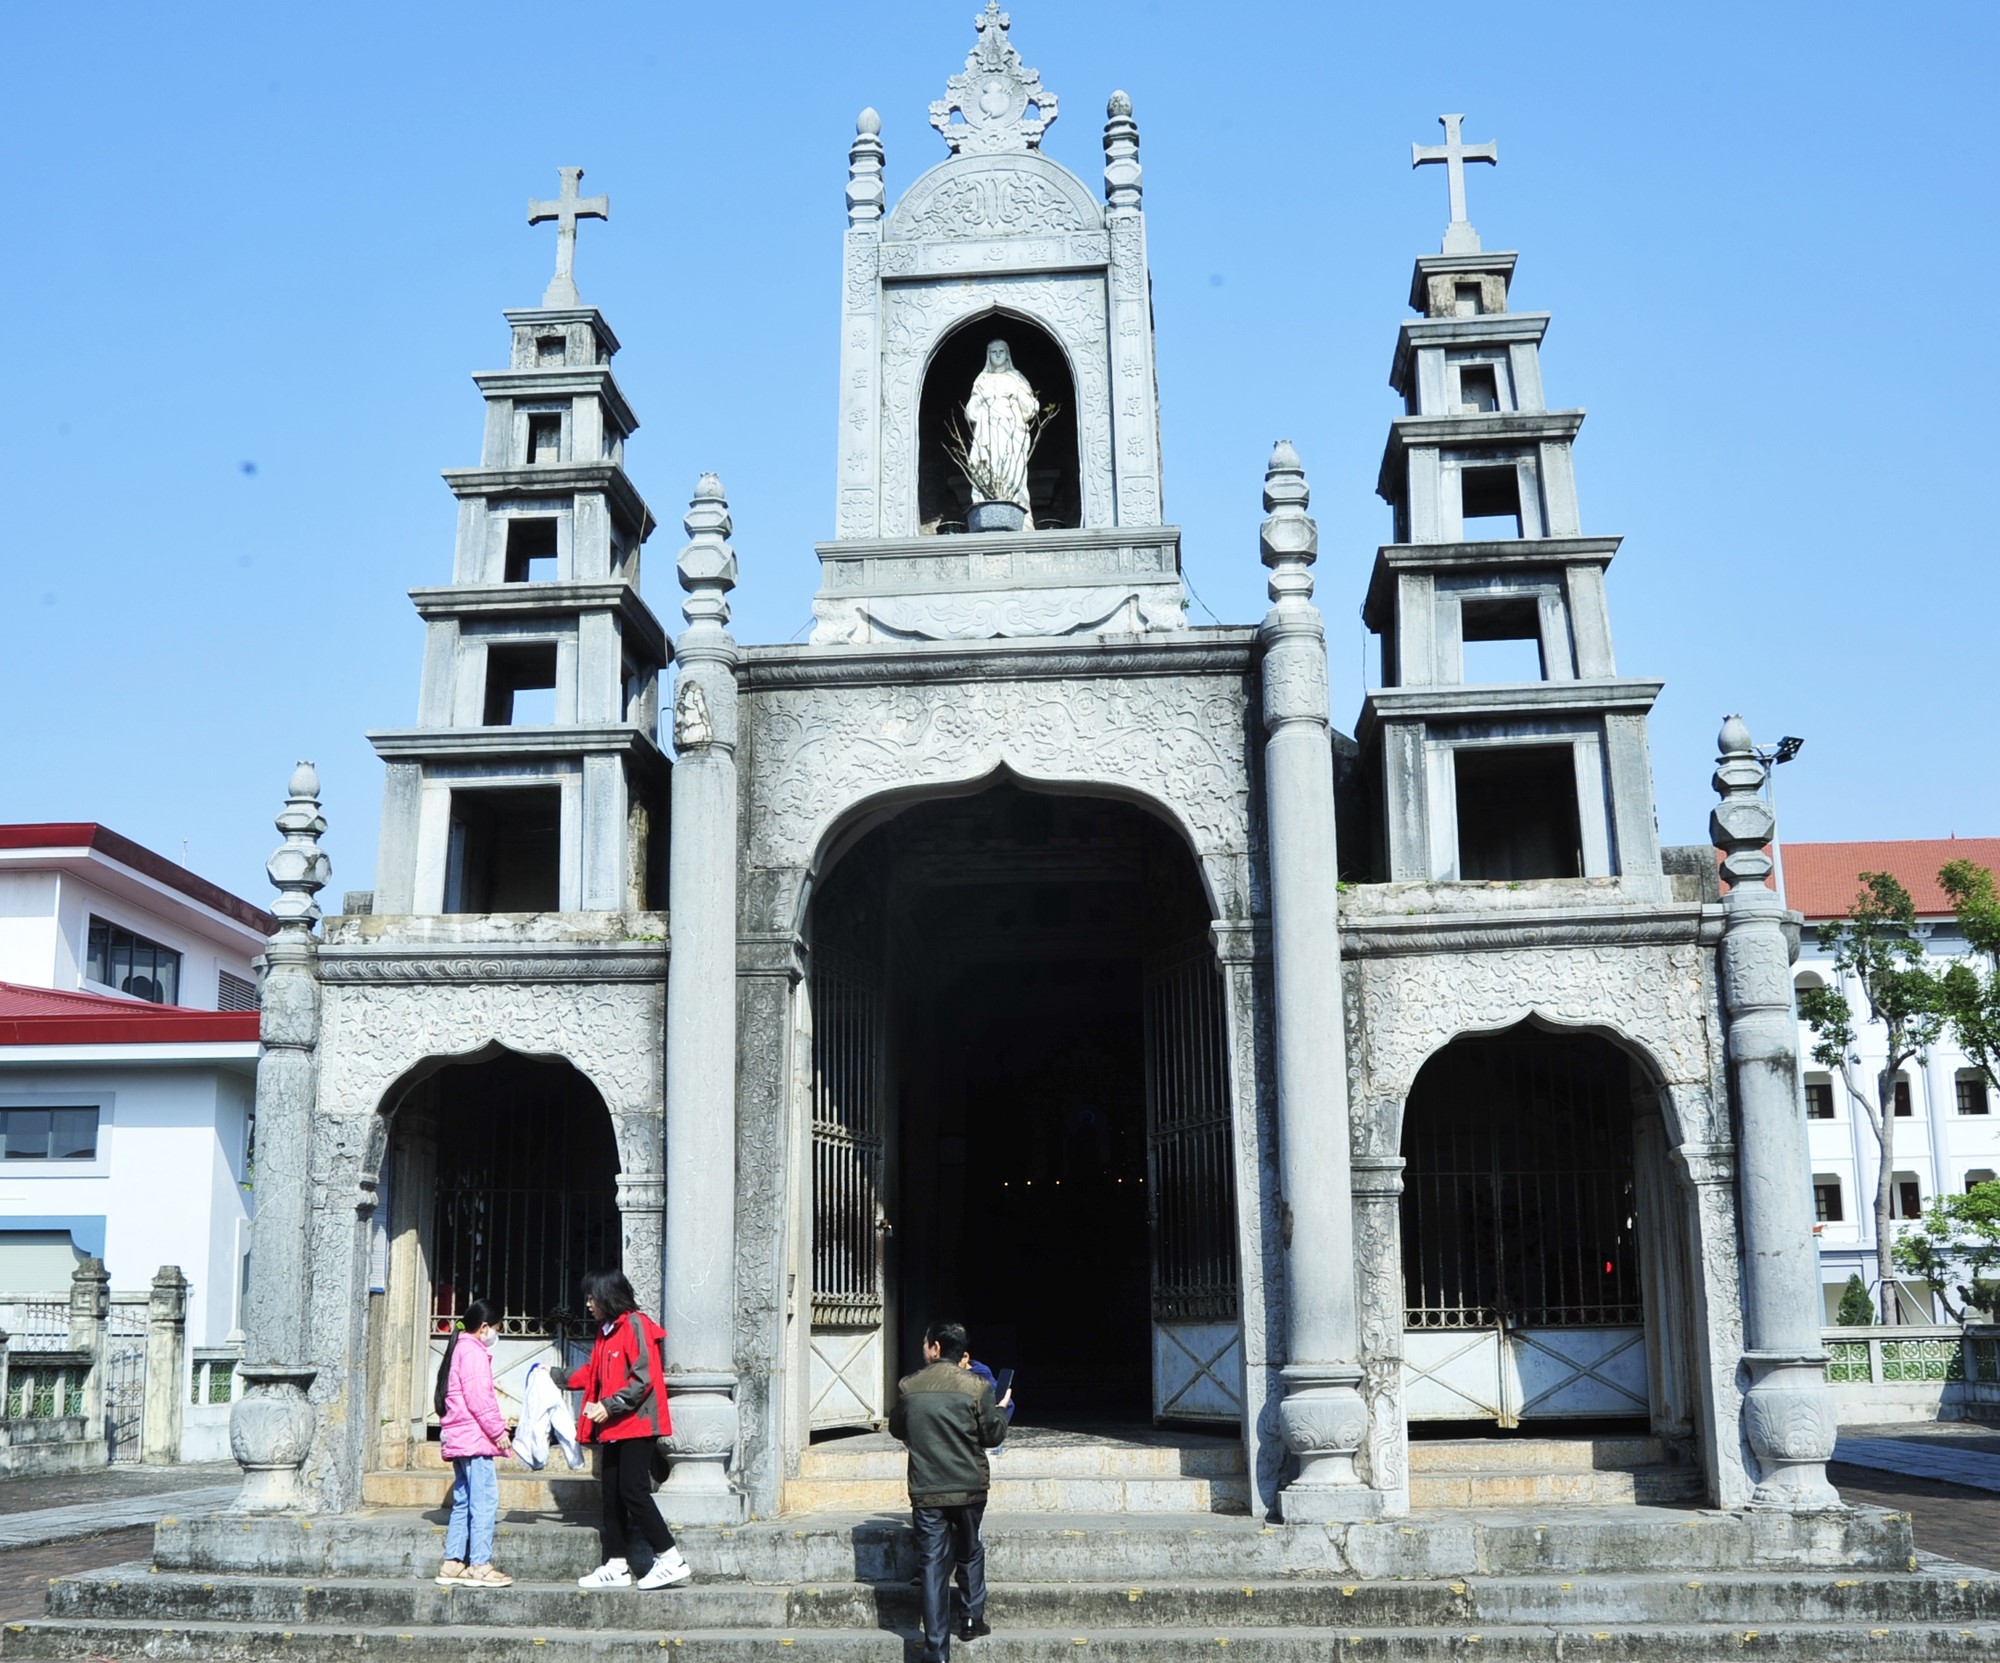 Chiêm ngắm ngôi nhà thờ được làm hoàn toàn bằng đá ở Ninh Bình - Ảnh 3.